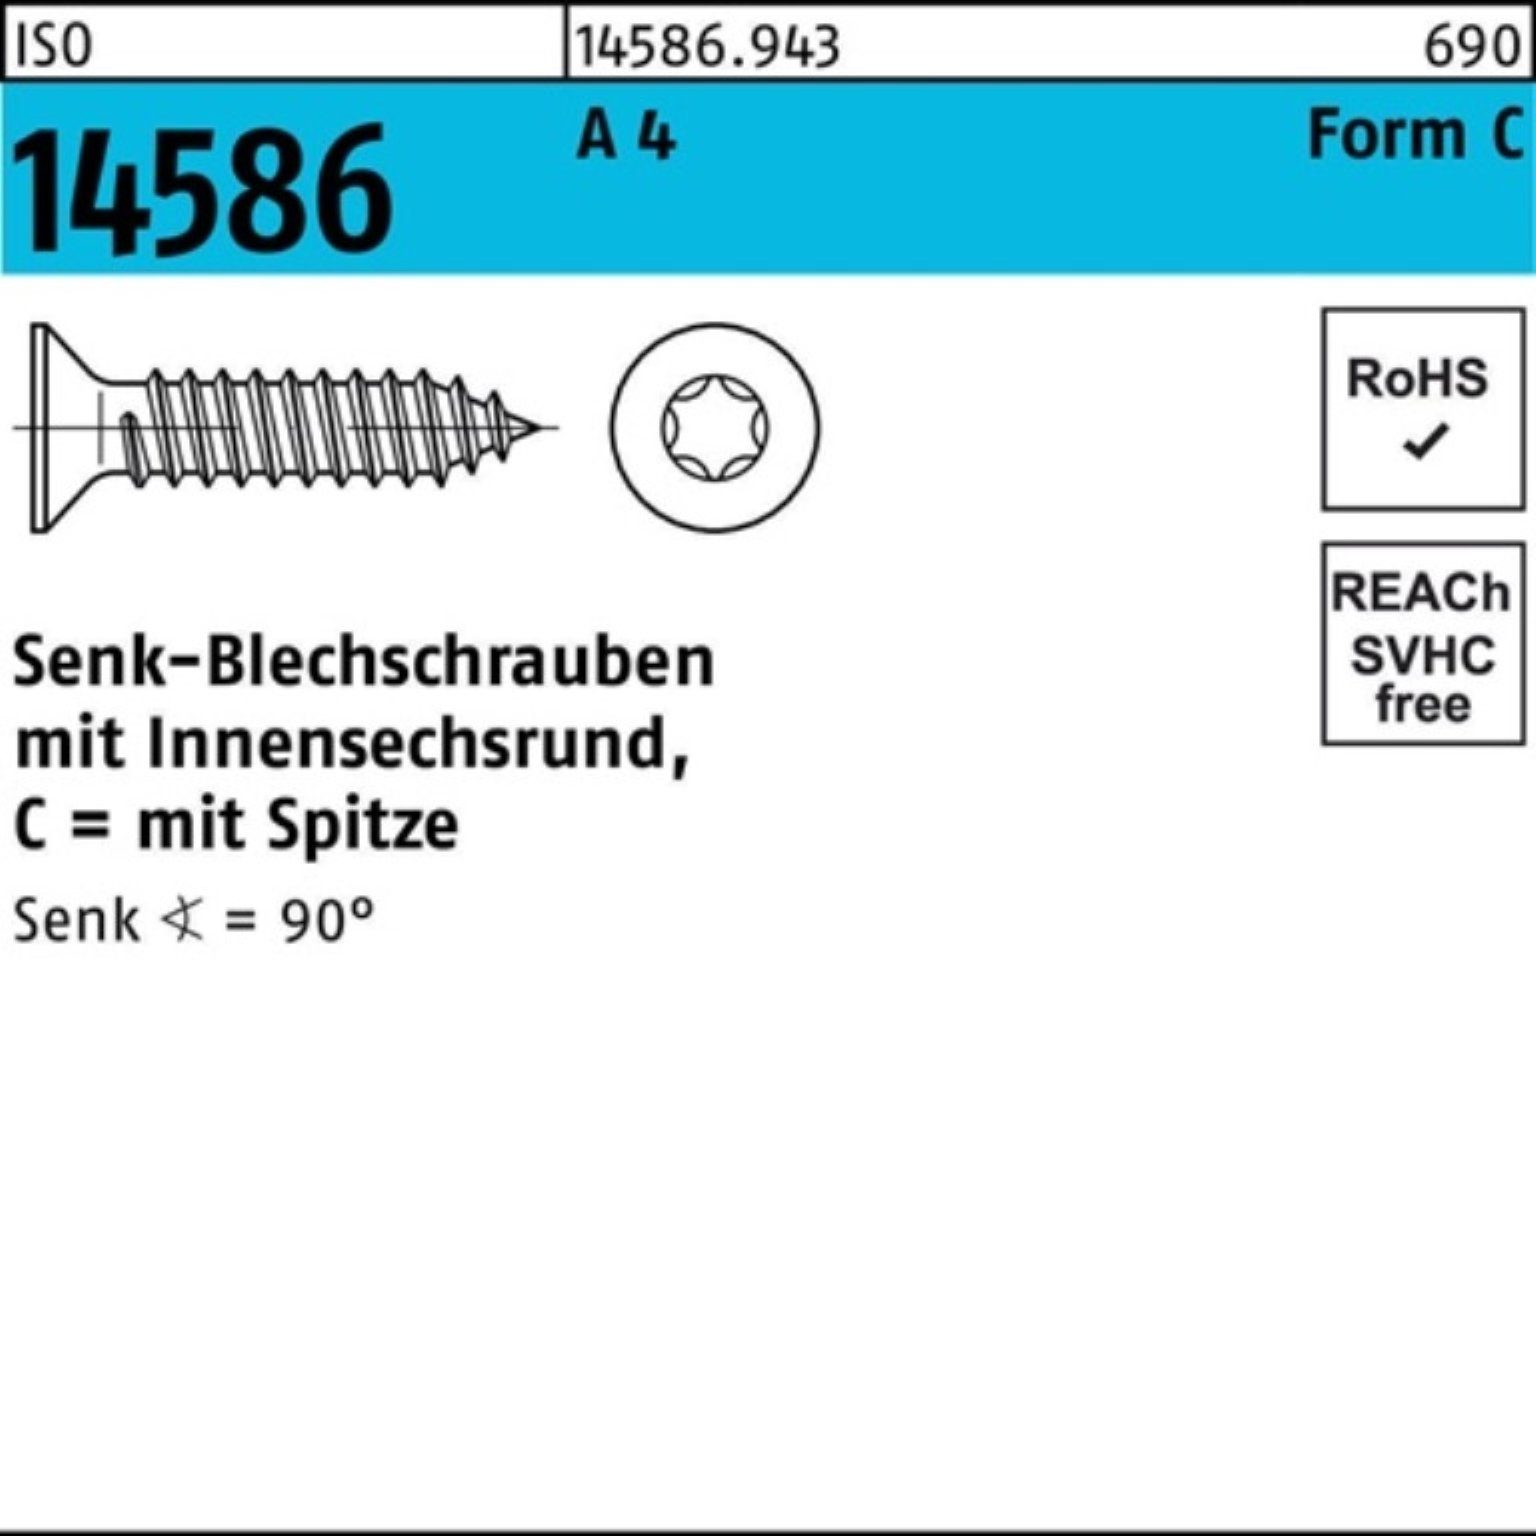 Schraube 3,5x ISR/Spitze Pack 4 100 13-T15 Reyher 14586 1000er A ISO Senkblechschraube